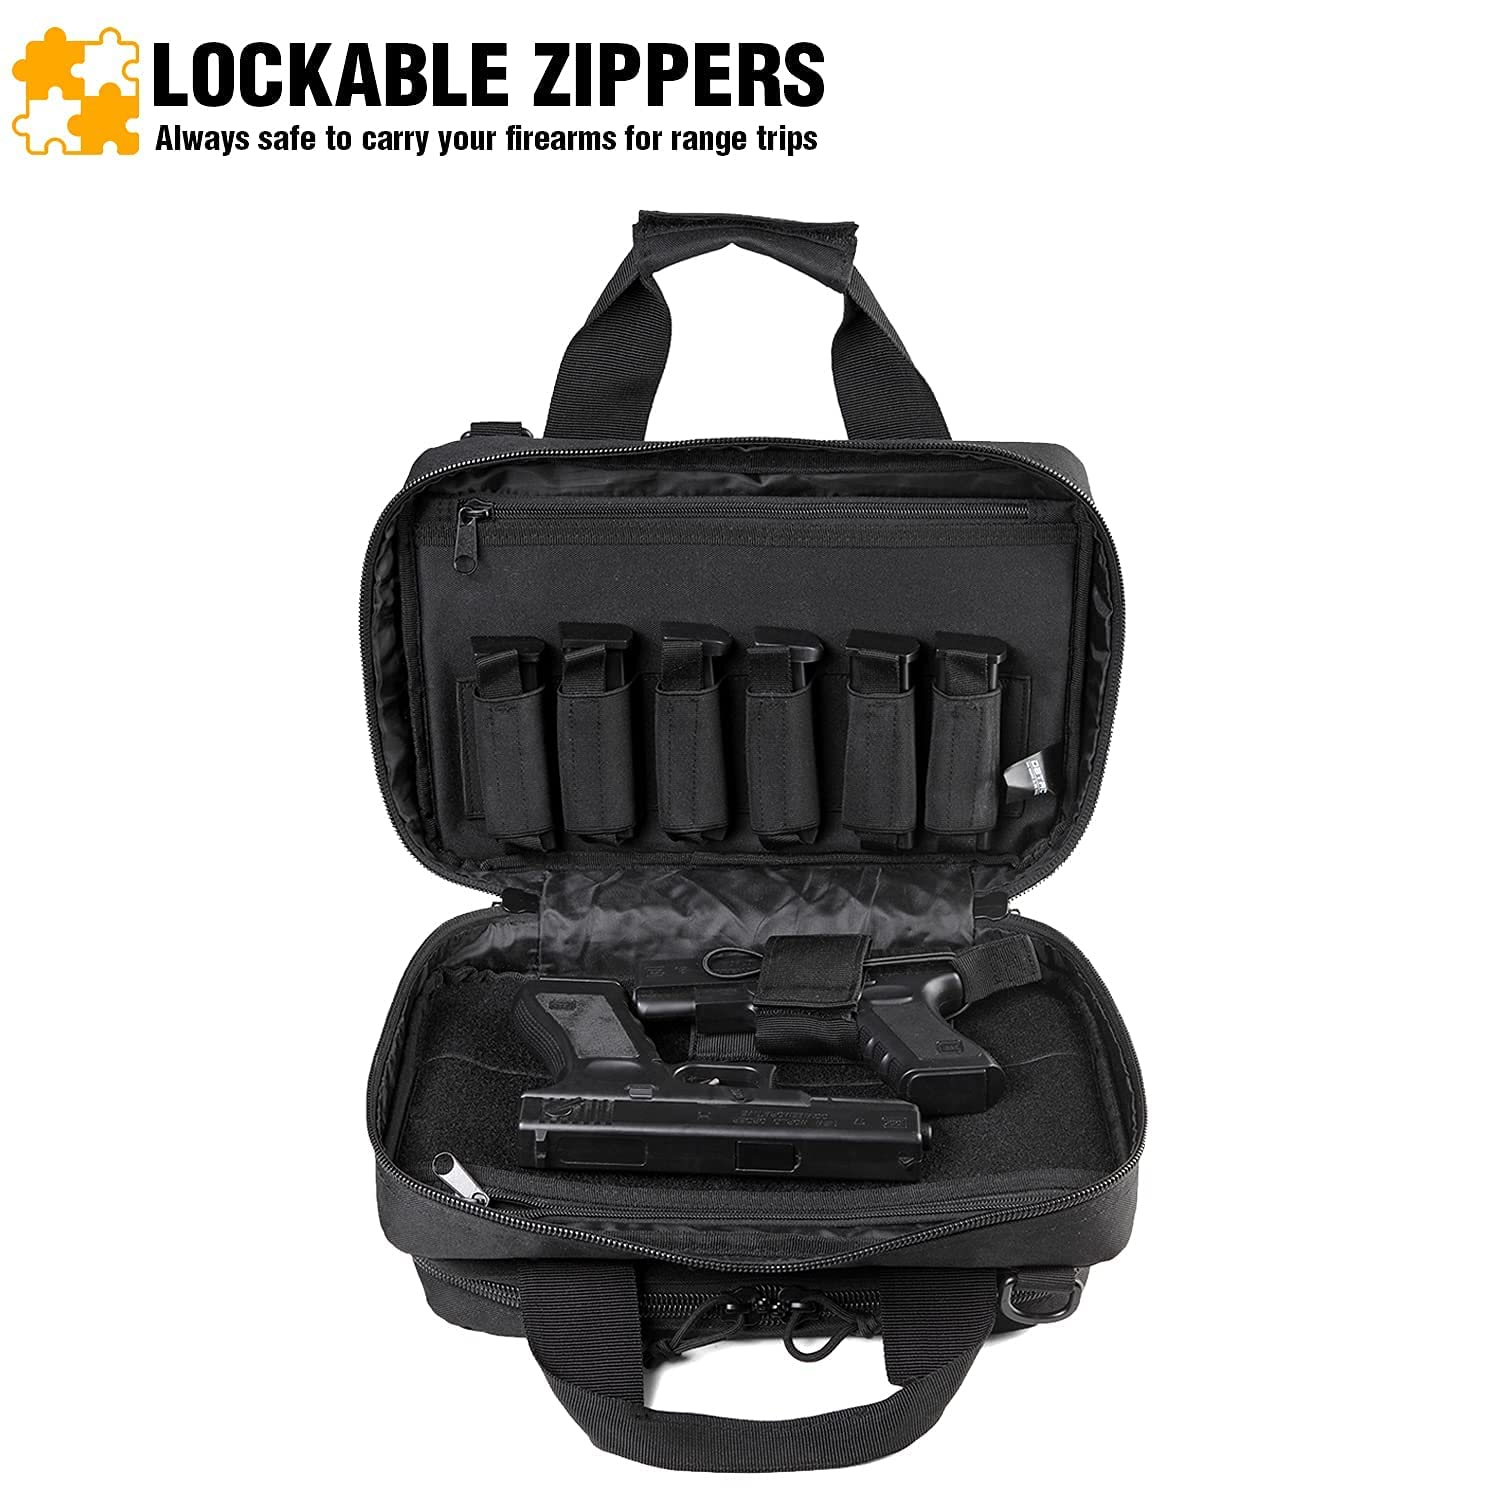 DBTAC Range Bag Soft Pistol Case XS (Urban Black) + Tactical Lunch Bag (Black), Durable Material with adjustable shoulder strap, Multi-functional Design